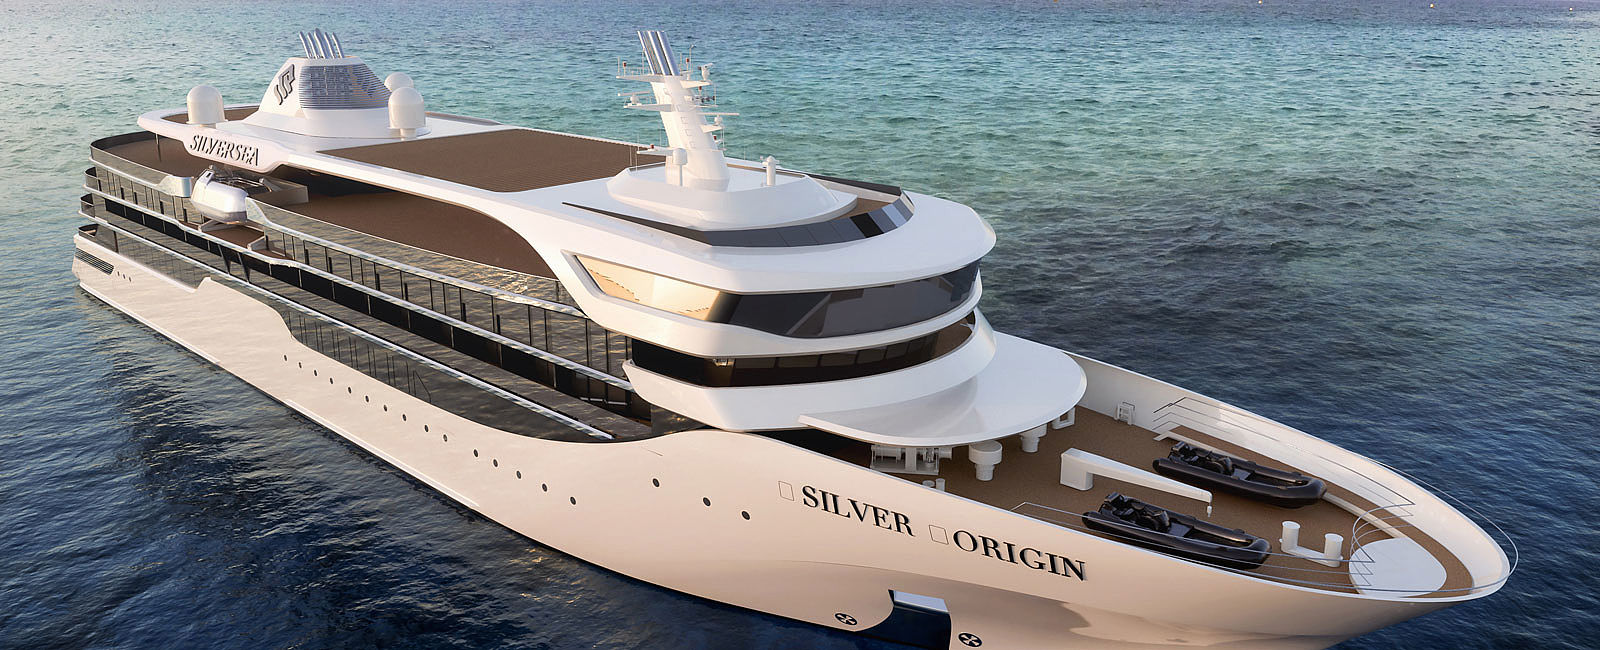 KREUZFAHRT NEWS
 Silver Origin: Silversea enthüllt das eleganteste Schiff aller Zeiten 
